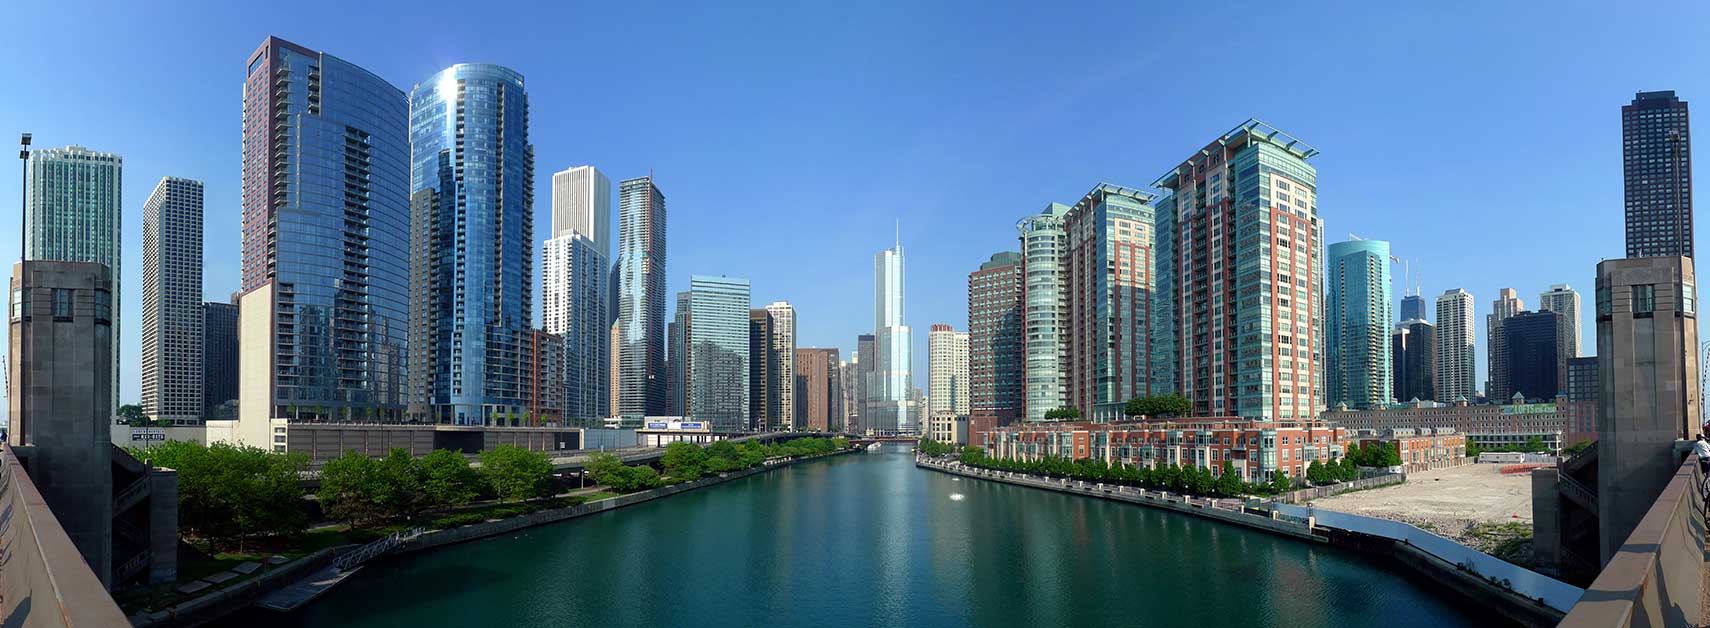 chicago tourism